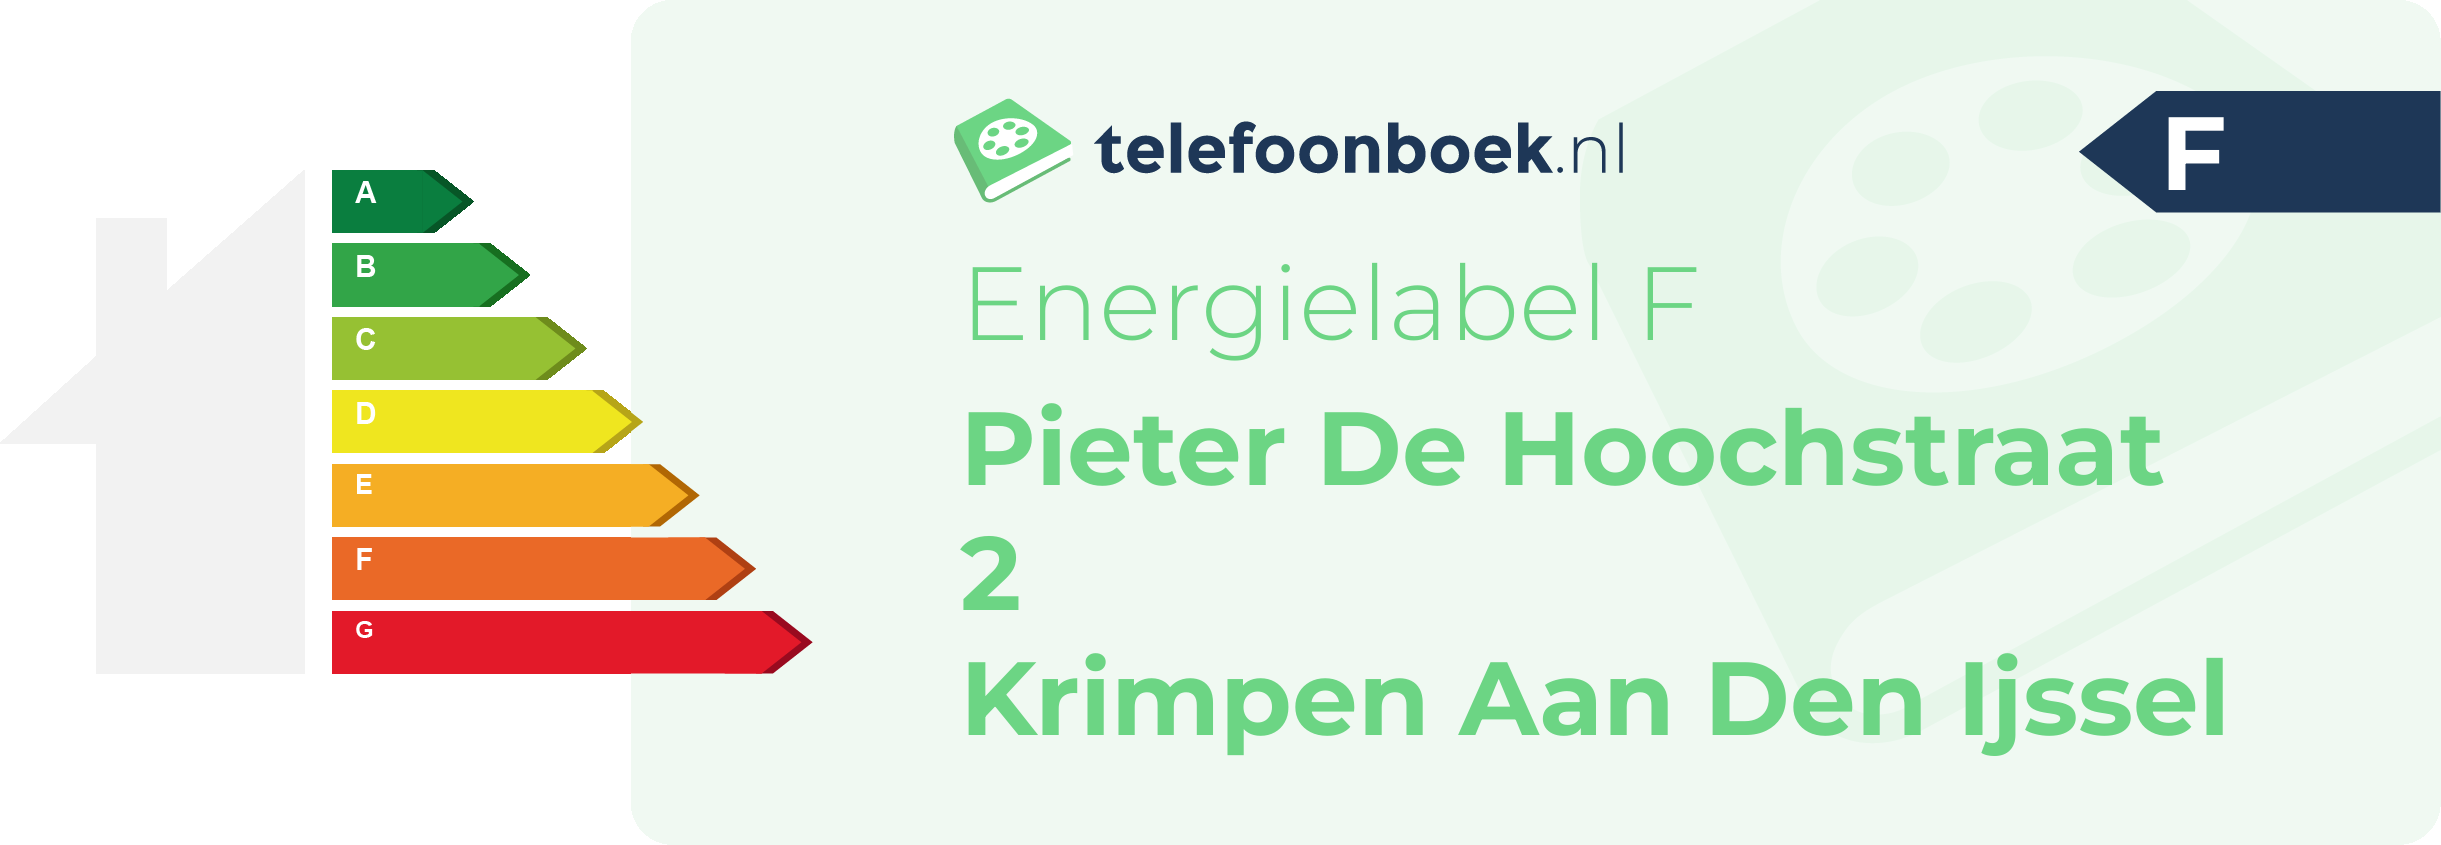 Energielabel Pieter De Hoochstraat 2 Krimpen Aan Den Ijssel